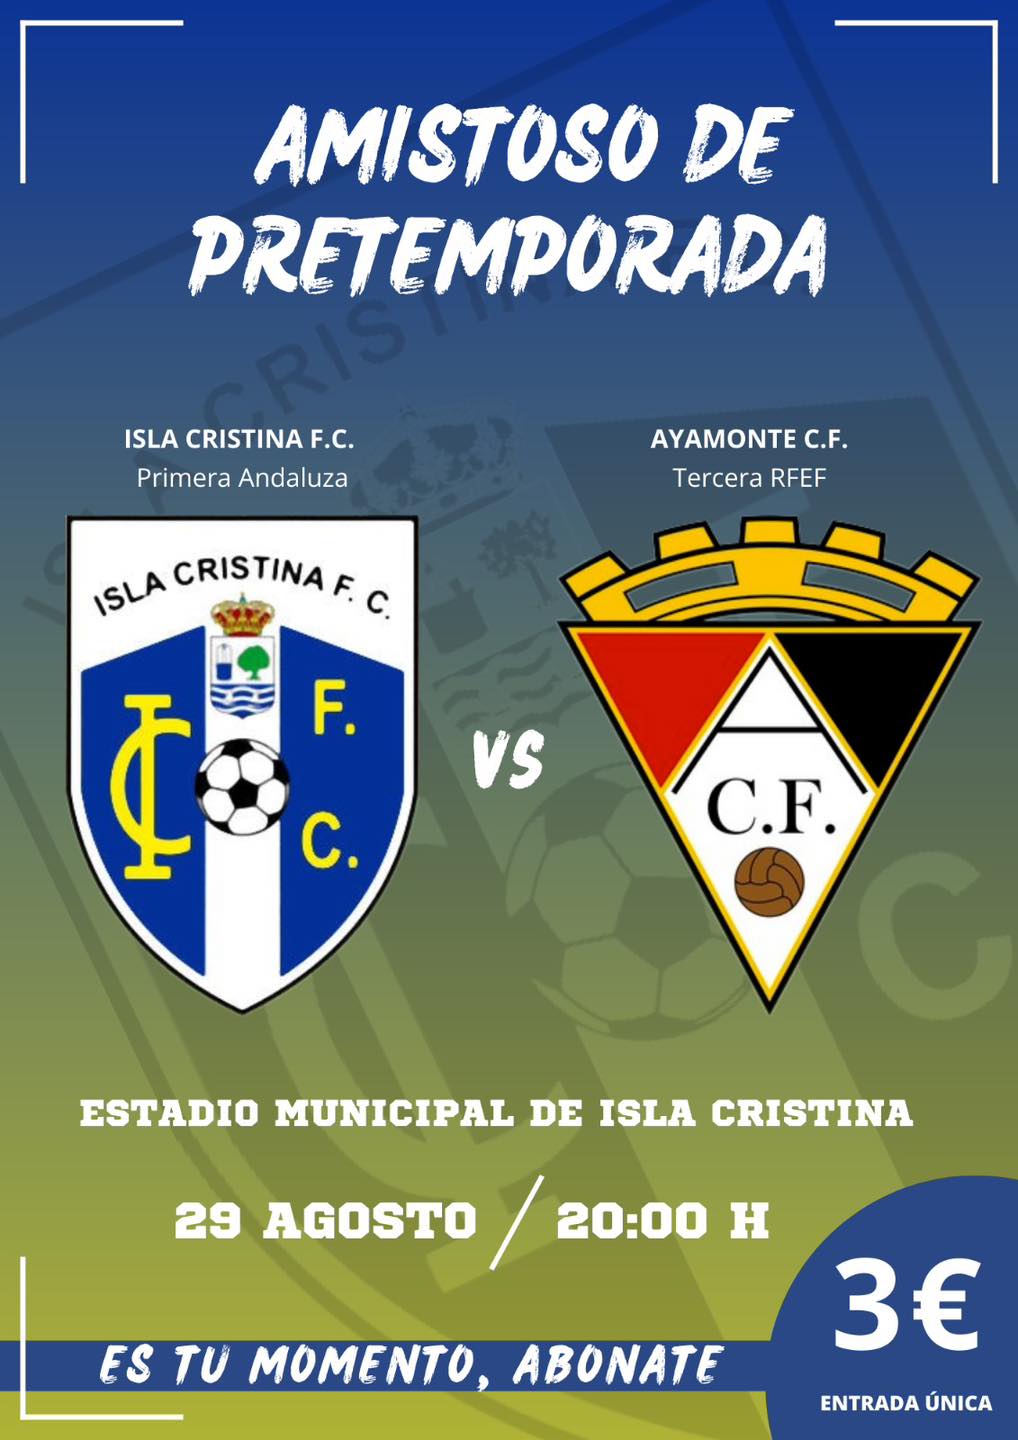 El Isla Cristina vs Ayamonte, juegan un amistoso de máxima rivalidad